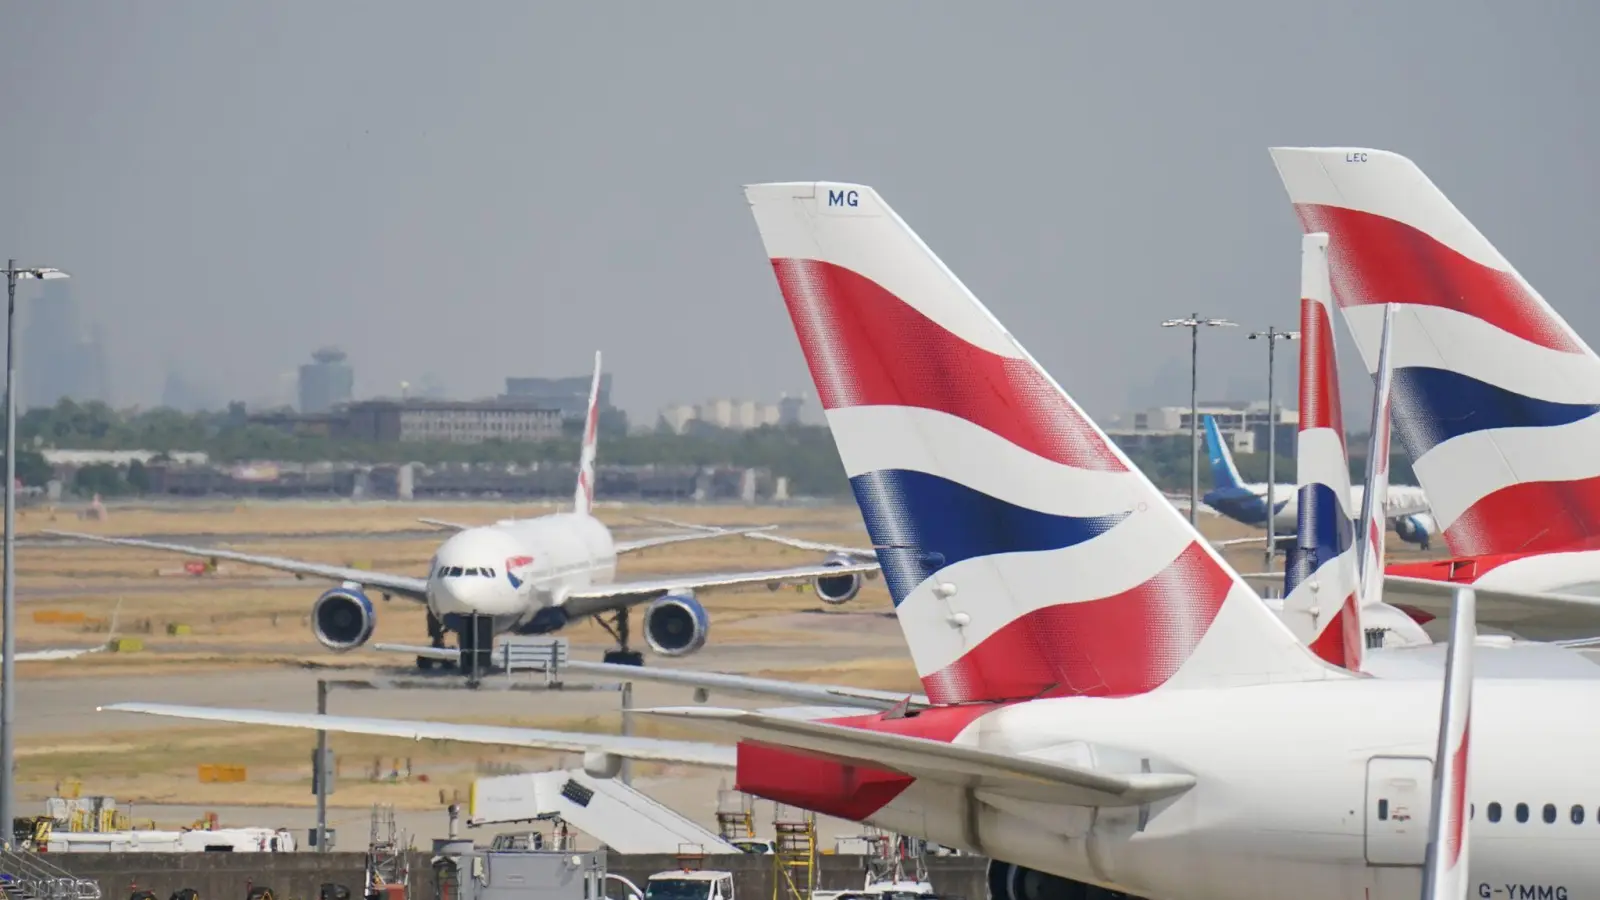 Der Flughafen Heathrow ist von technischen Problemen betroffen. (Foto: Jonathan Brady/PA Wire/dpa)